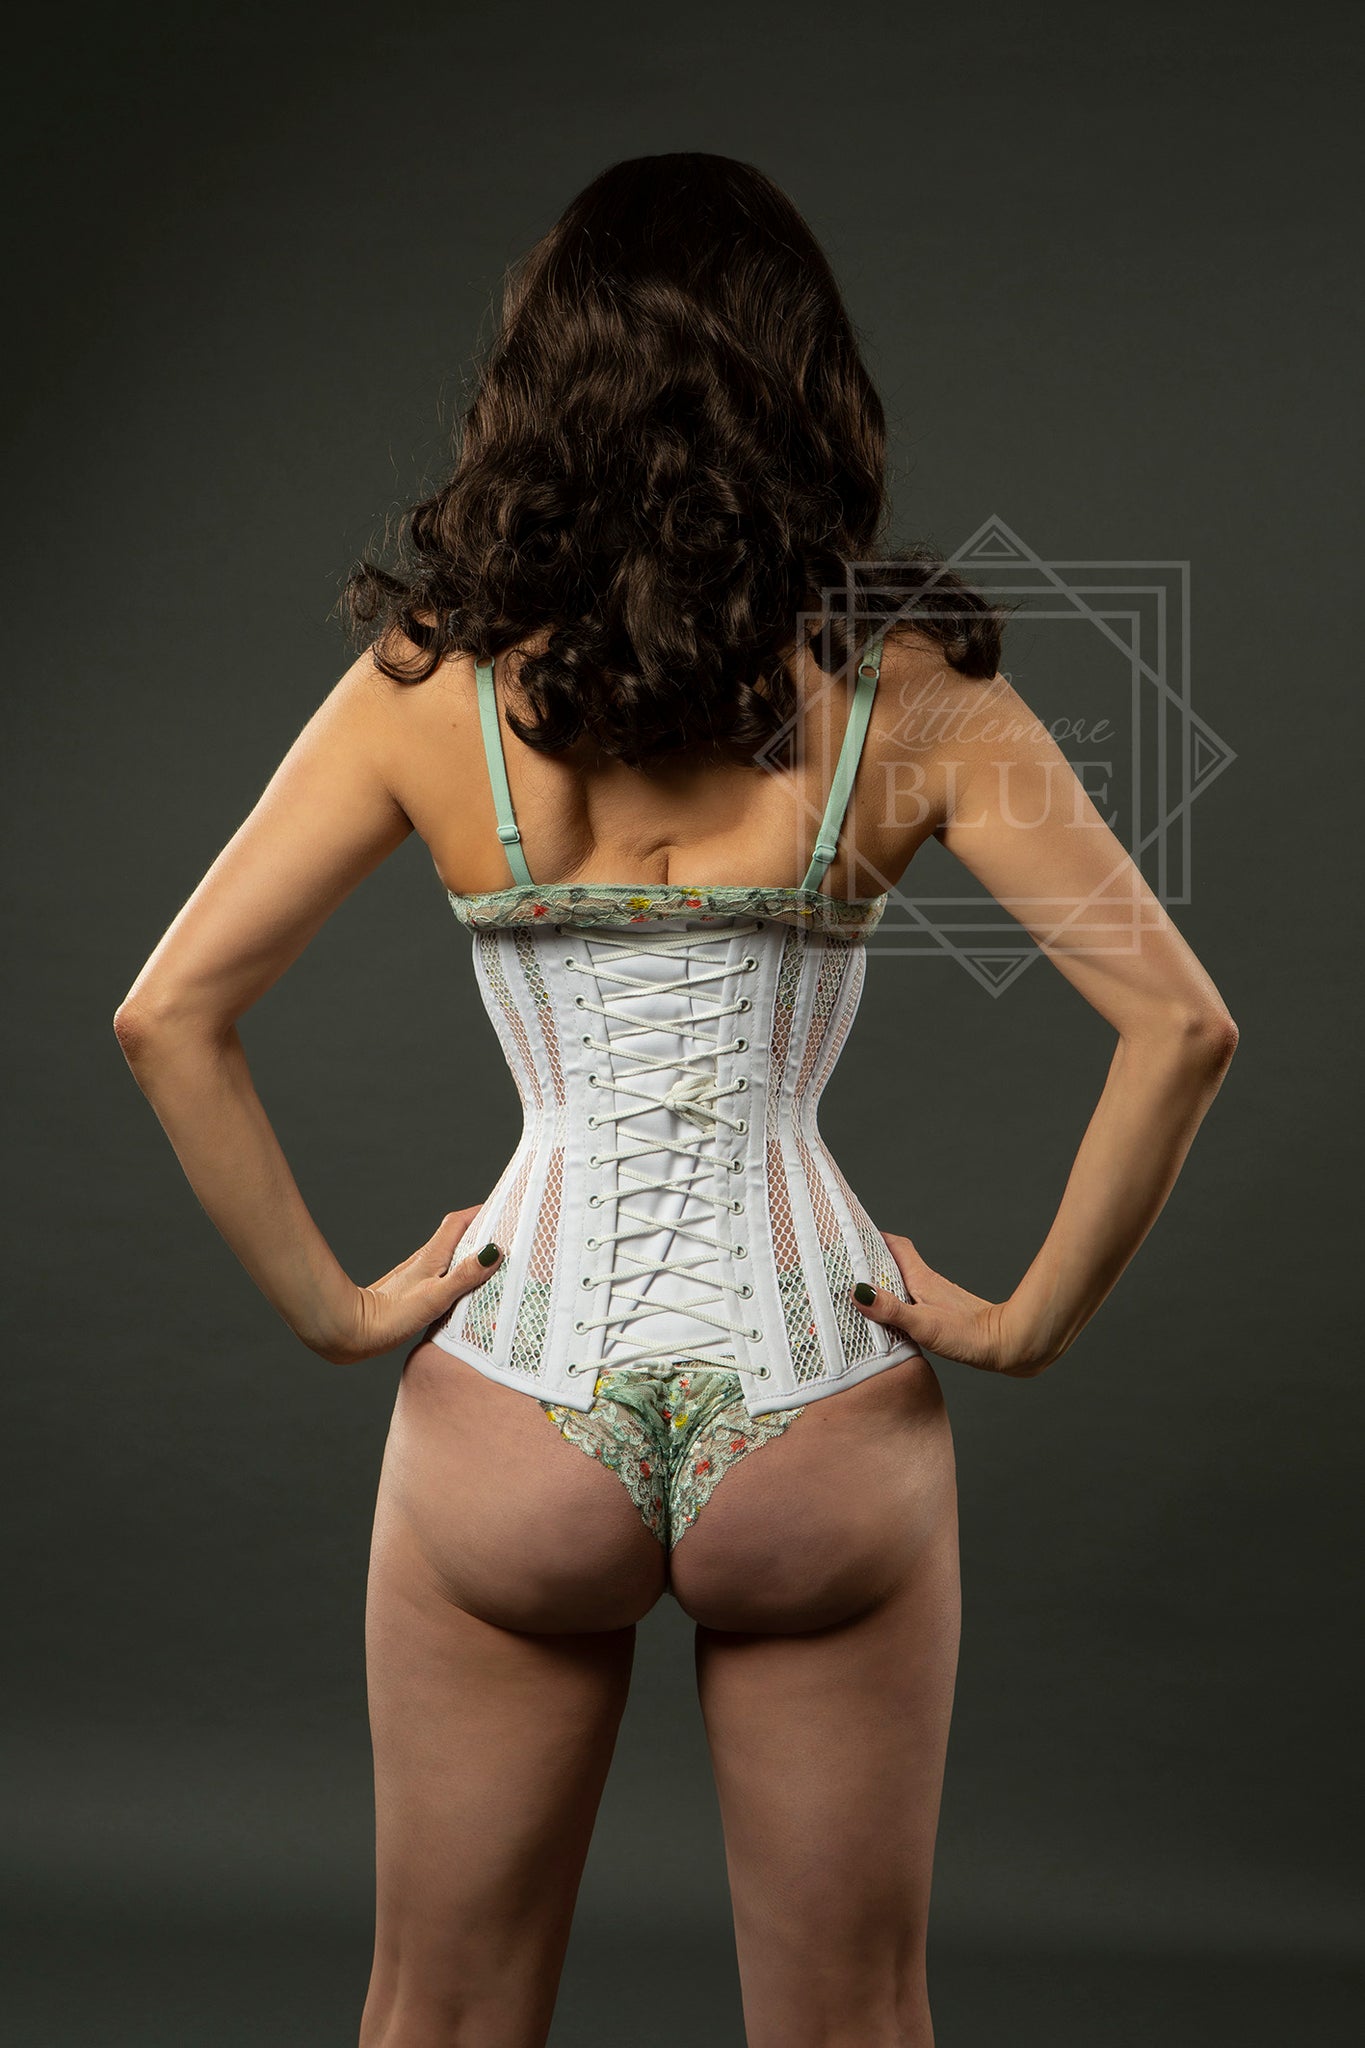 white mesh underbust corset burlesque costume